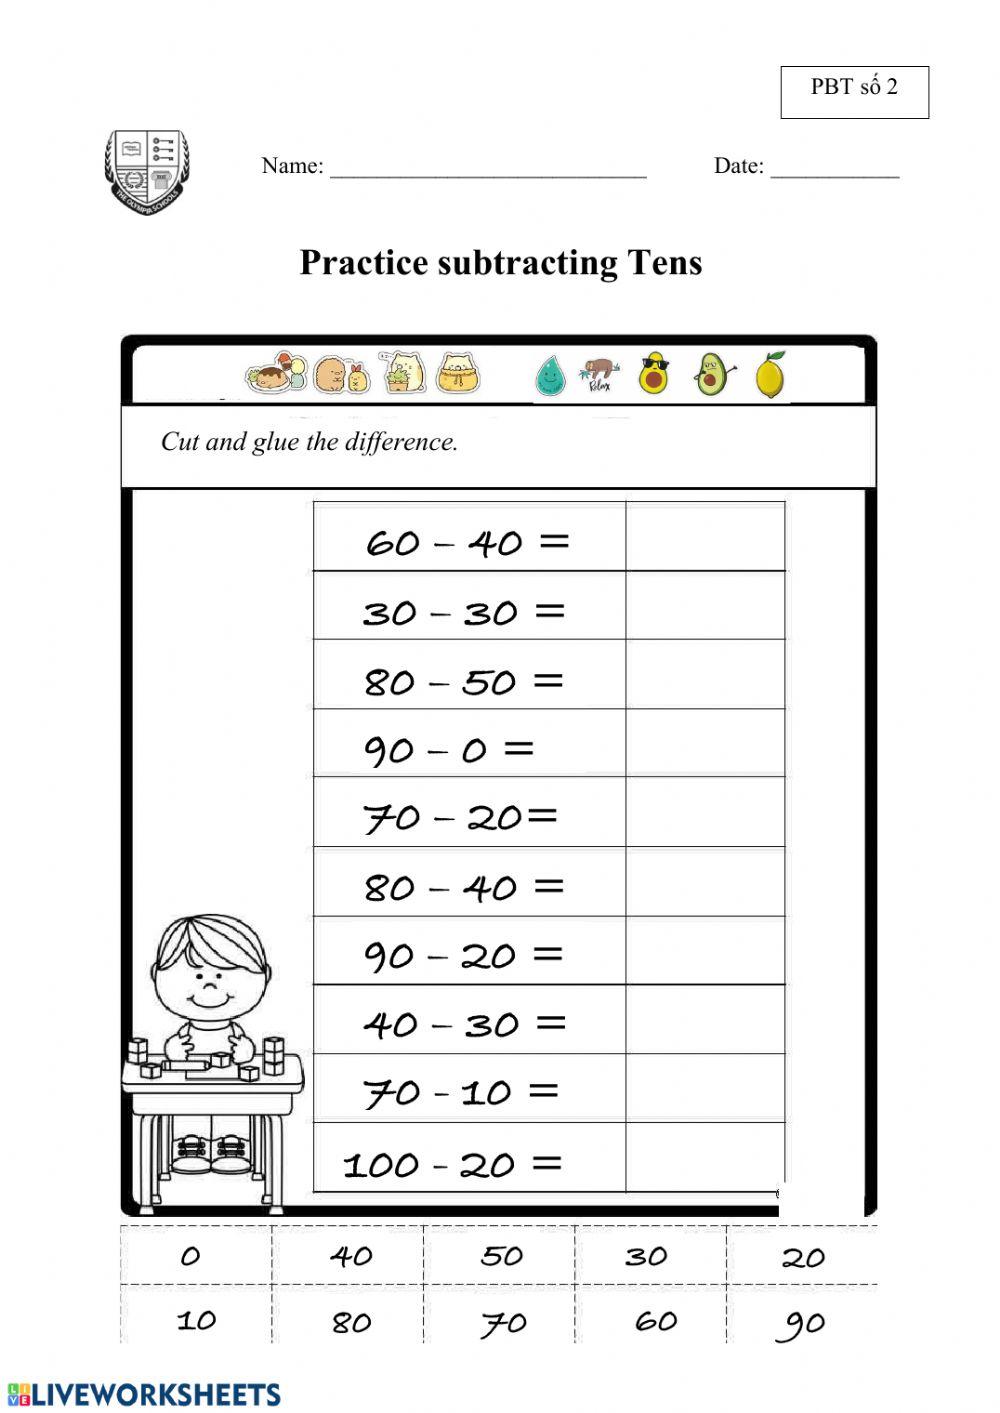 Subtracting Tens (PBT số 2)